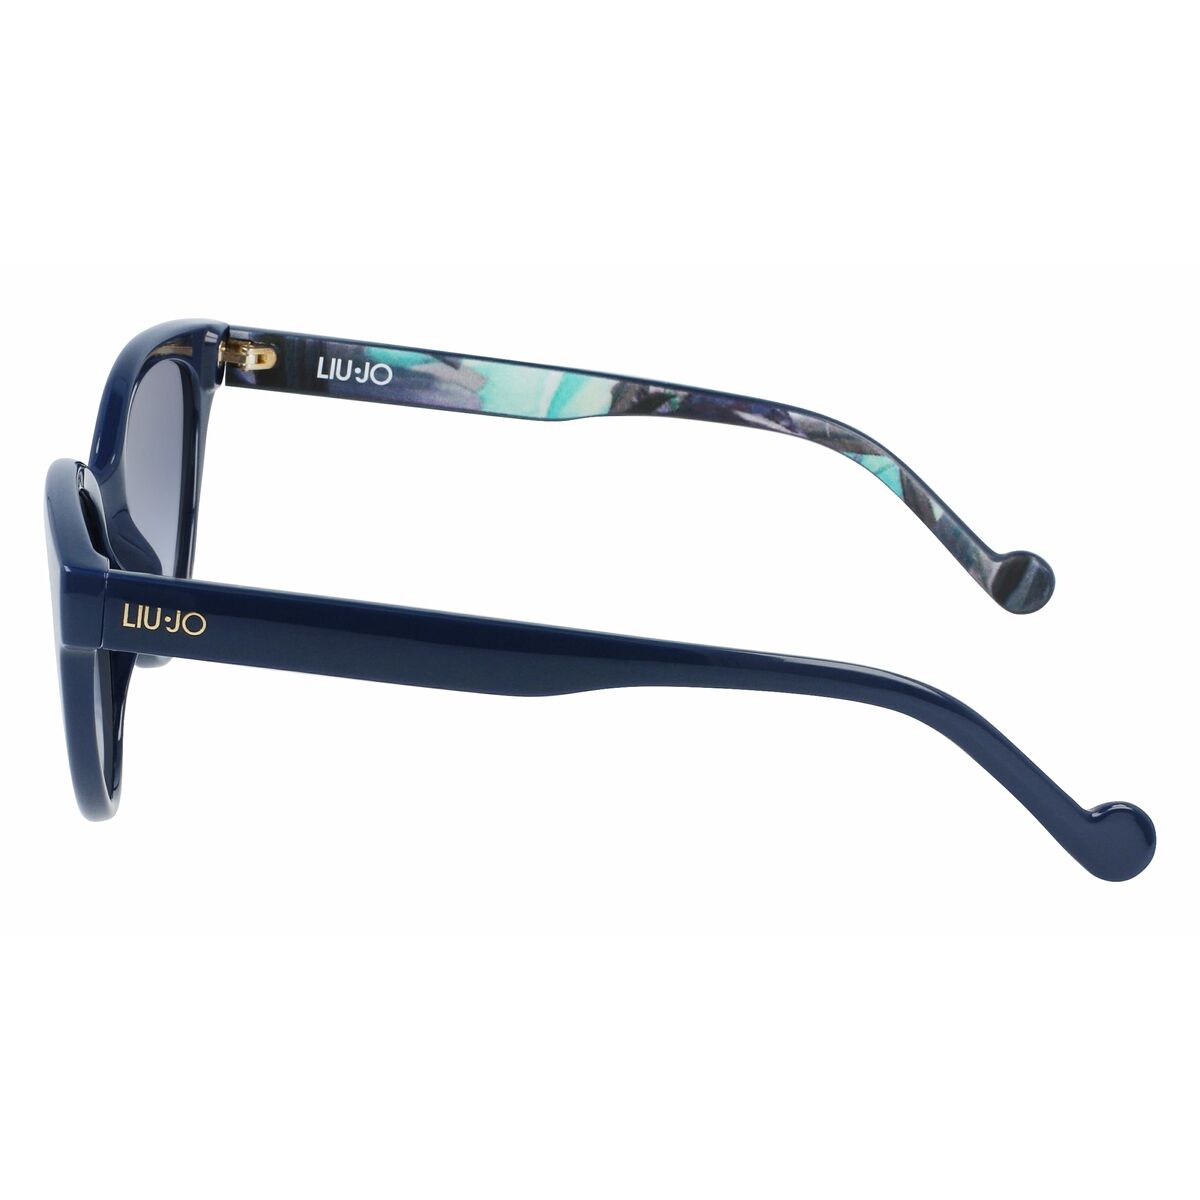 Kaufe Damensonnenbrille Liu·Jo LJ745S-424 bei AWK Flagship um € 56.00